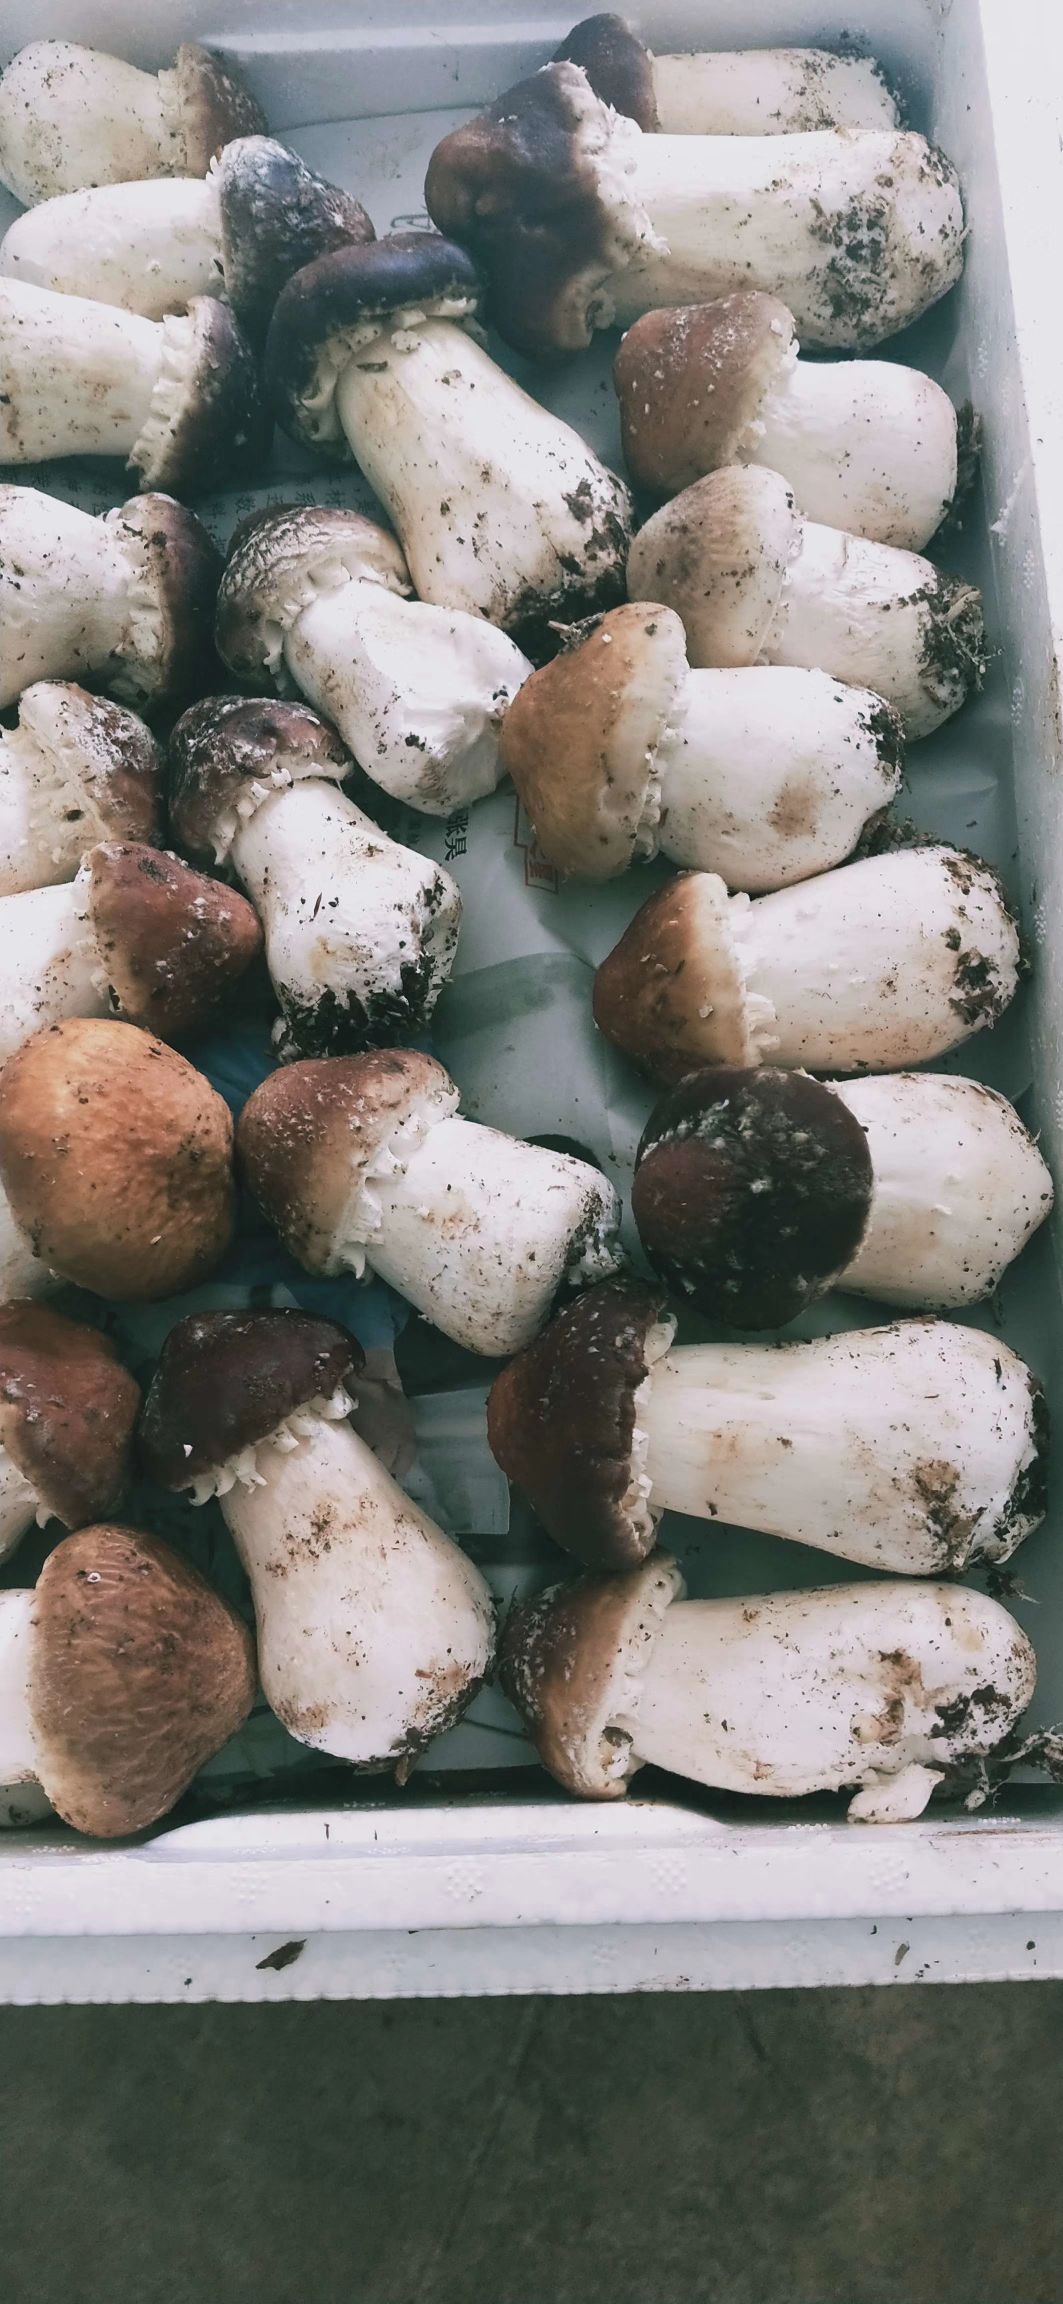 淮北大球蓋菇菌種  赤松茸菌種一畝1600元回收產品鮮菇、鹽水菇